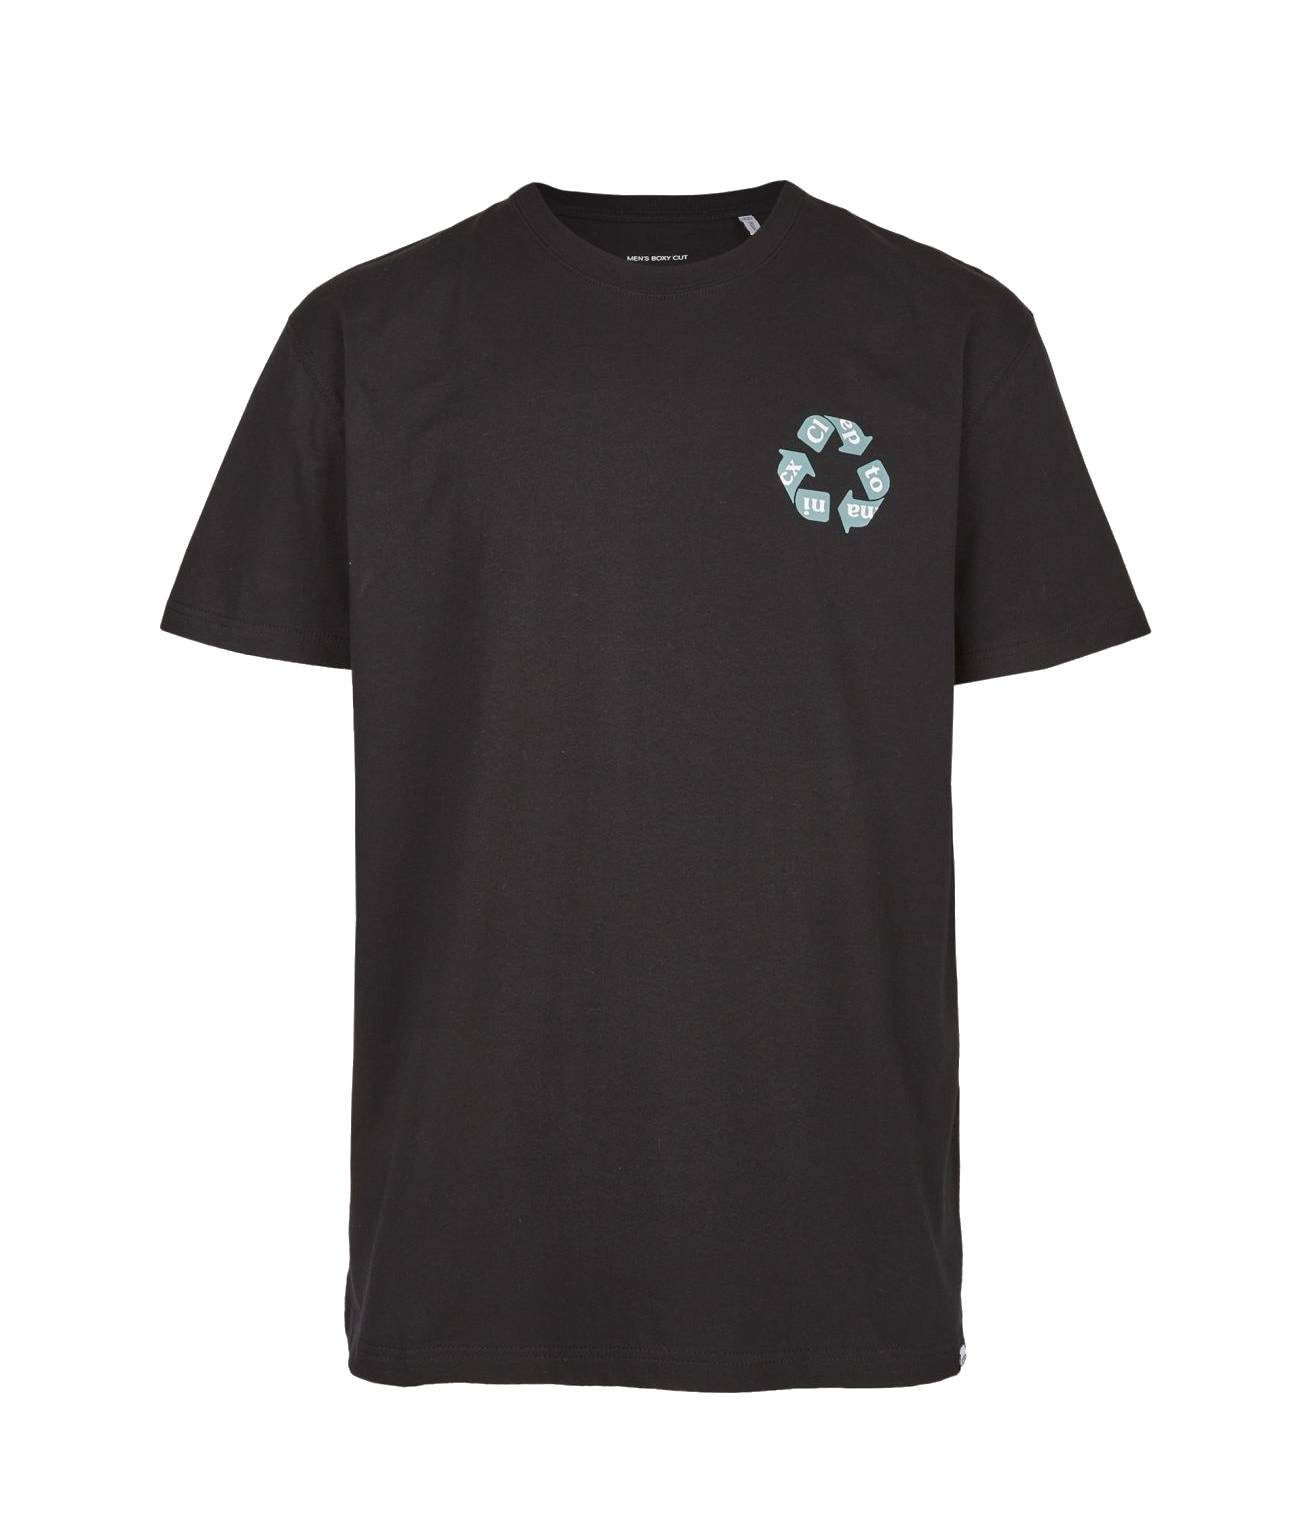 Cleptomanicx T-Shirt T-Shirt Cleptomanicx Recycle